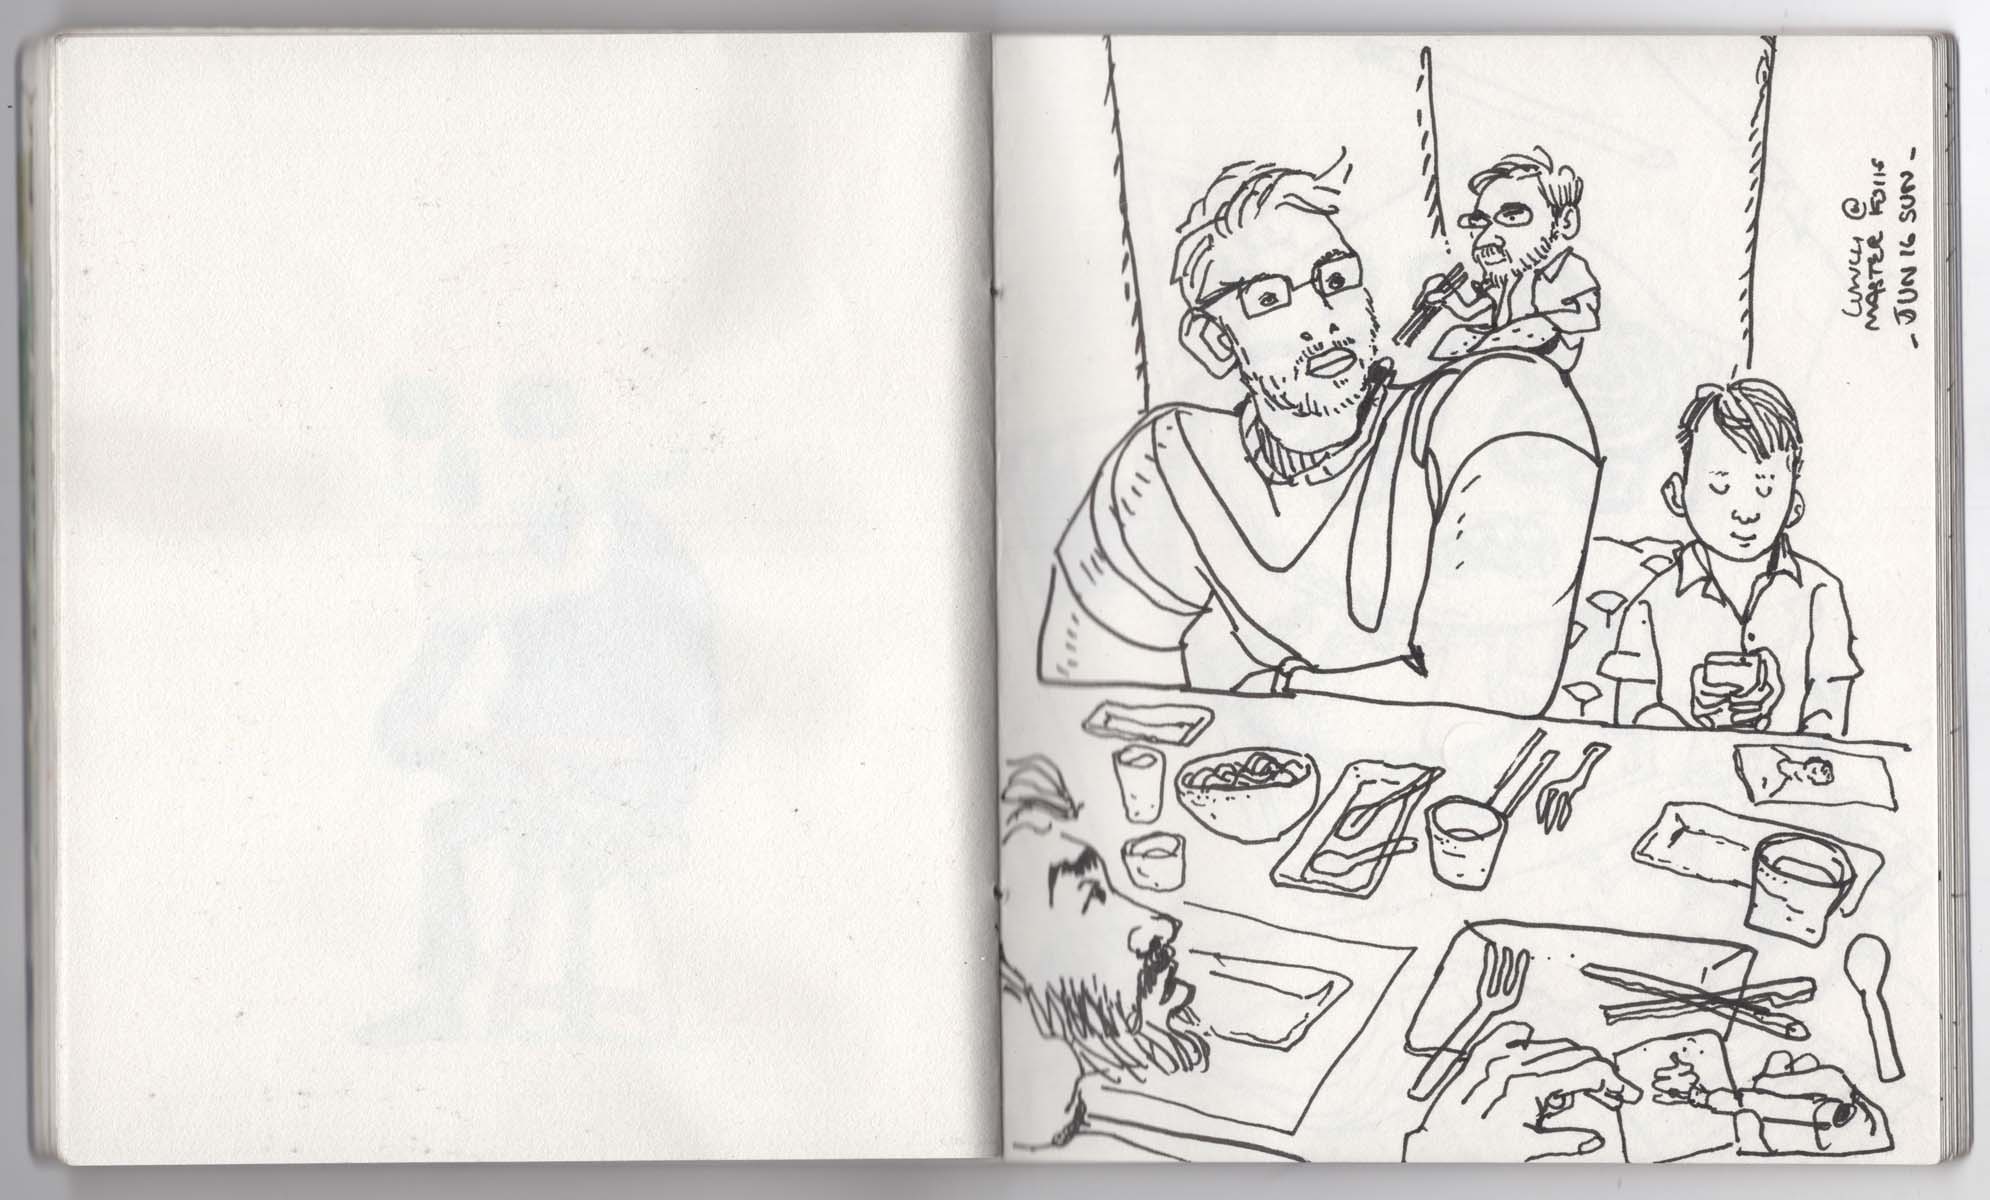 Grey-Sketchbook-Illustrations-1